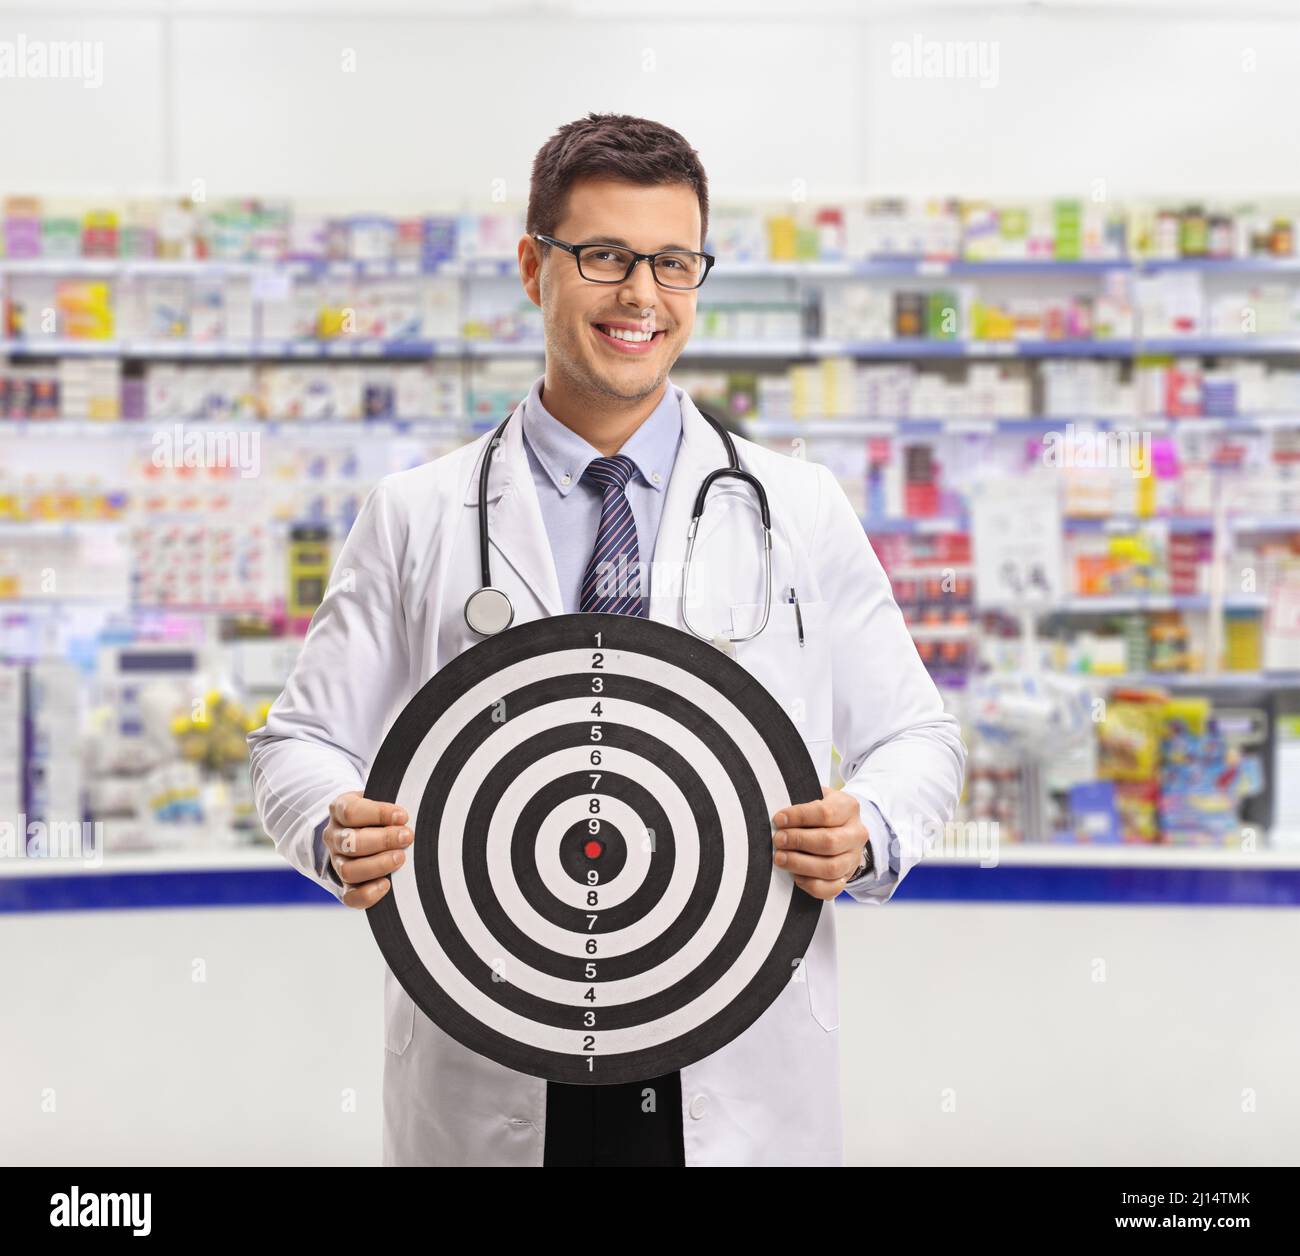 Homme chimiste tenant un tableau cible à l'intérieur d'une pharmacie Banque D'Images